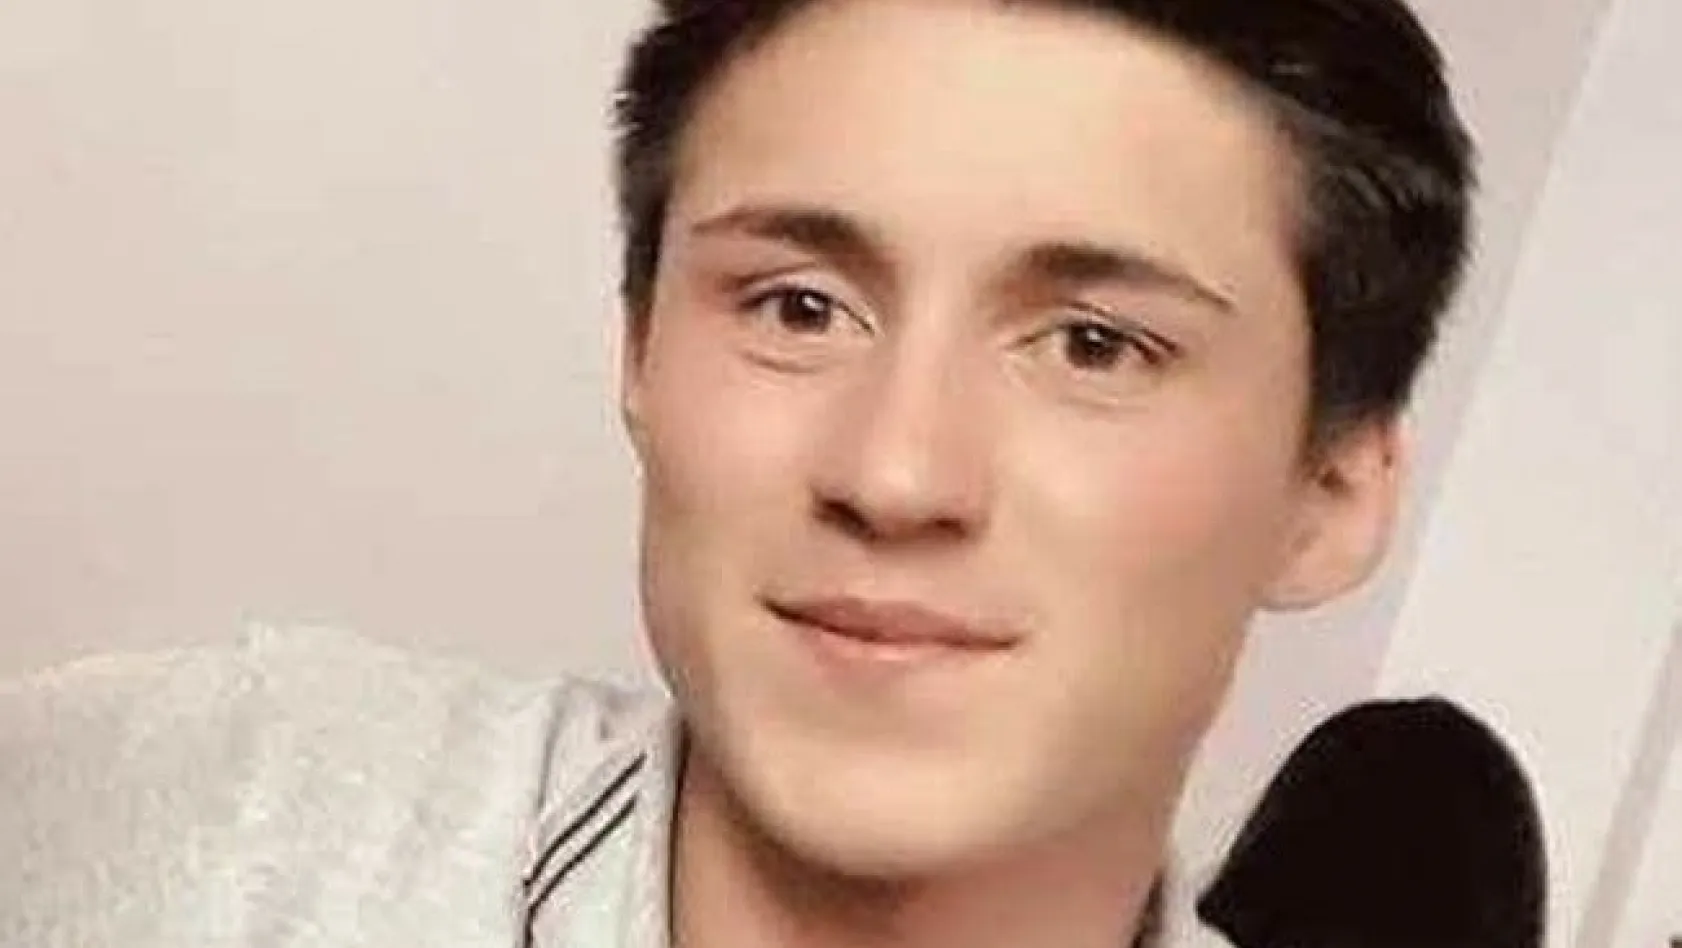 Okul bahçesinde vurulan 17 yaşındaki genç, hayata tutunamadı
